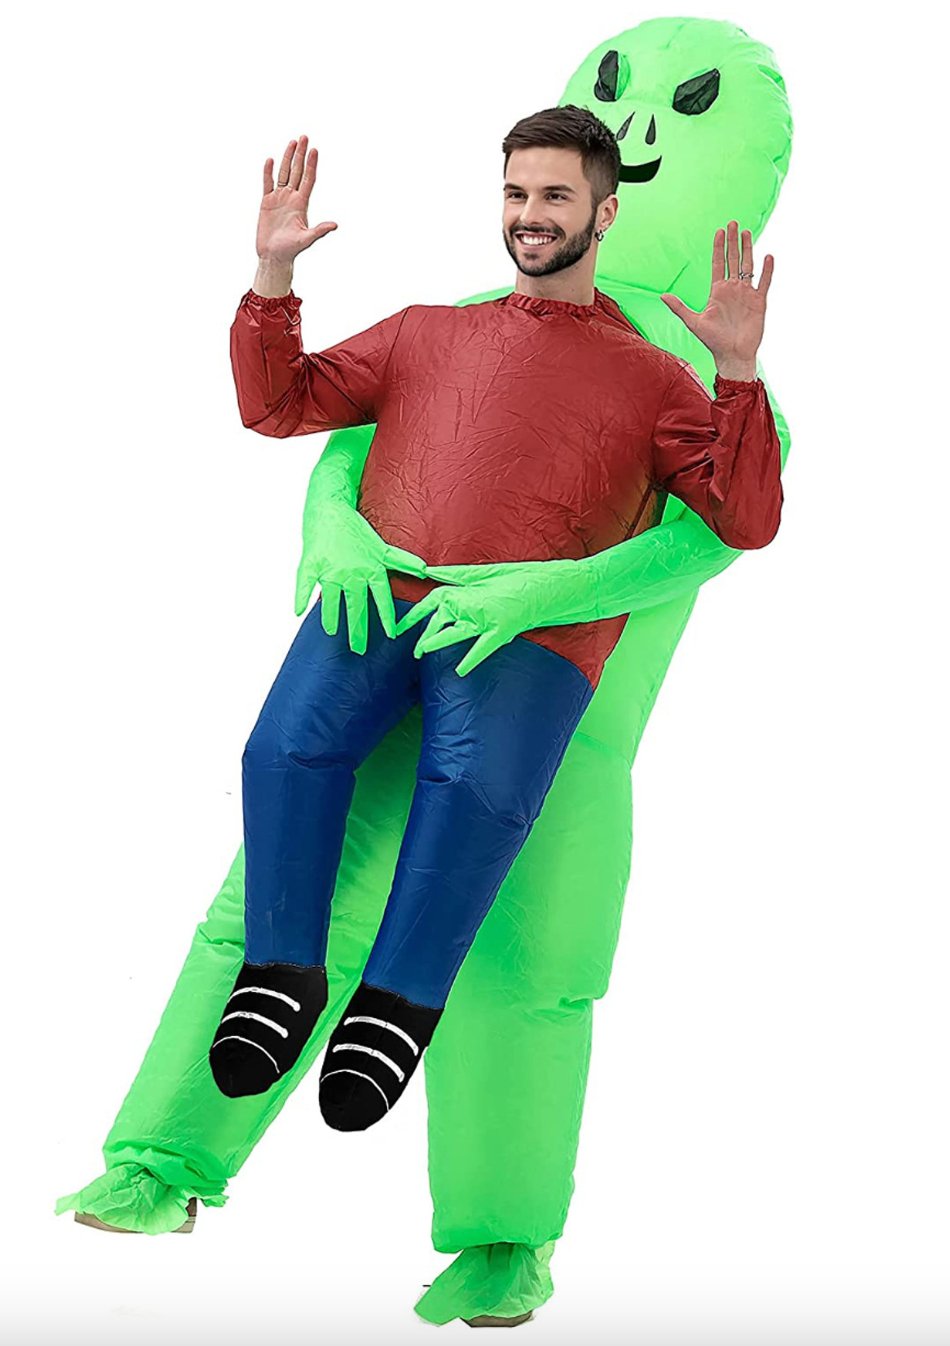 Costume Adulte Gonflable - Enlèvement Par Un Extraterrestre - Party Shop